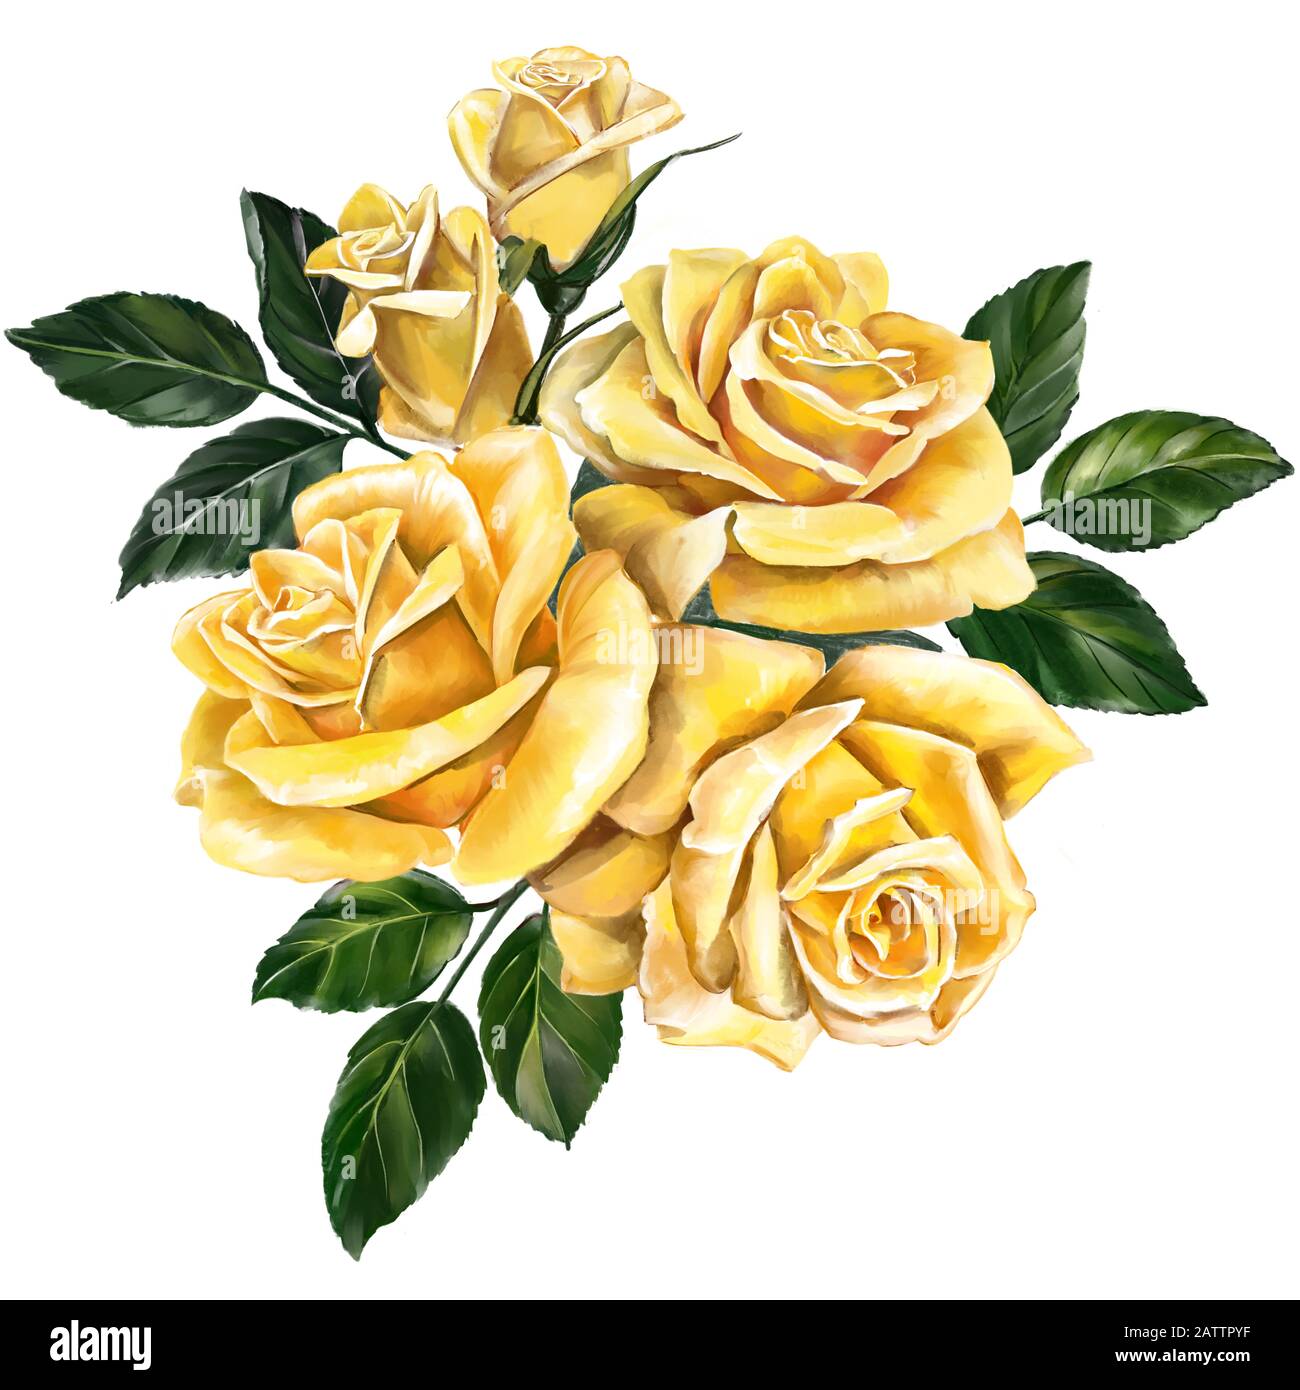 fleur rose jaune avec feuilles vertes, illustration d'art peinte avec des aquarelles isolées sur fond blanc. Banque D'Images